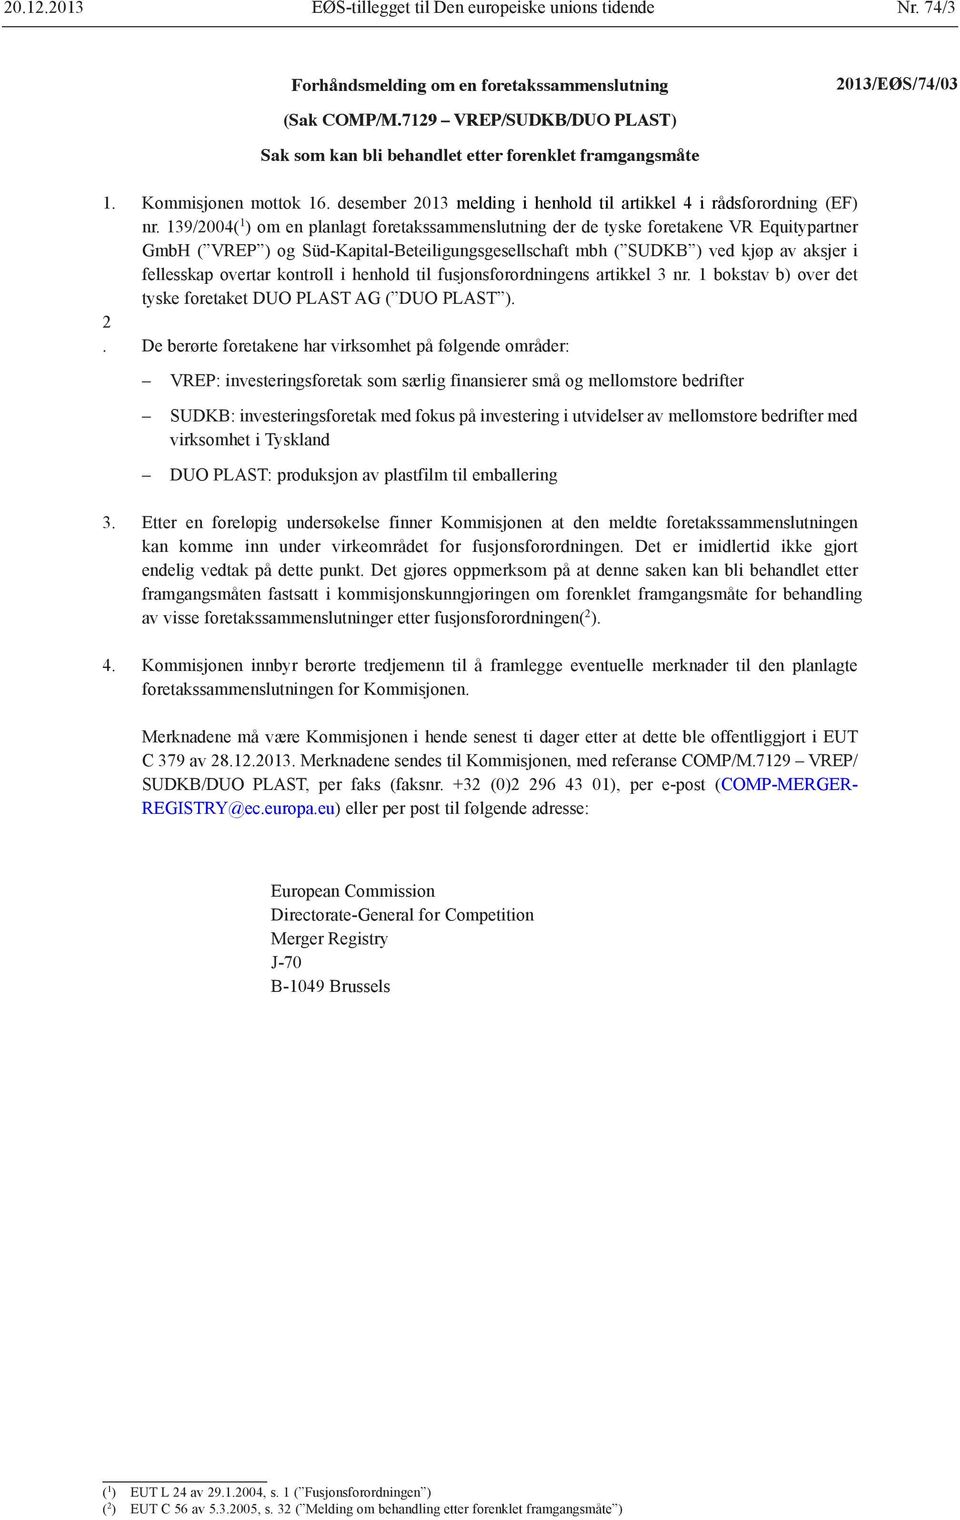 139/2004( 1 ) om en planlagt foretakssammenslutning der de tyske foretakene VR Equitypartner GmbH ( VREP ) og Süd-Kapital-Beteiligungsgesellschaft mbh ( SUDKB ) ved kjøp av aksjer i fellesskap